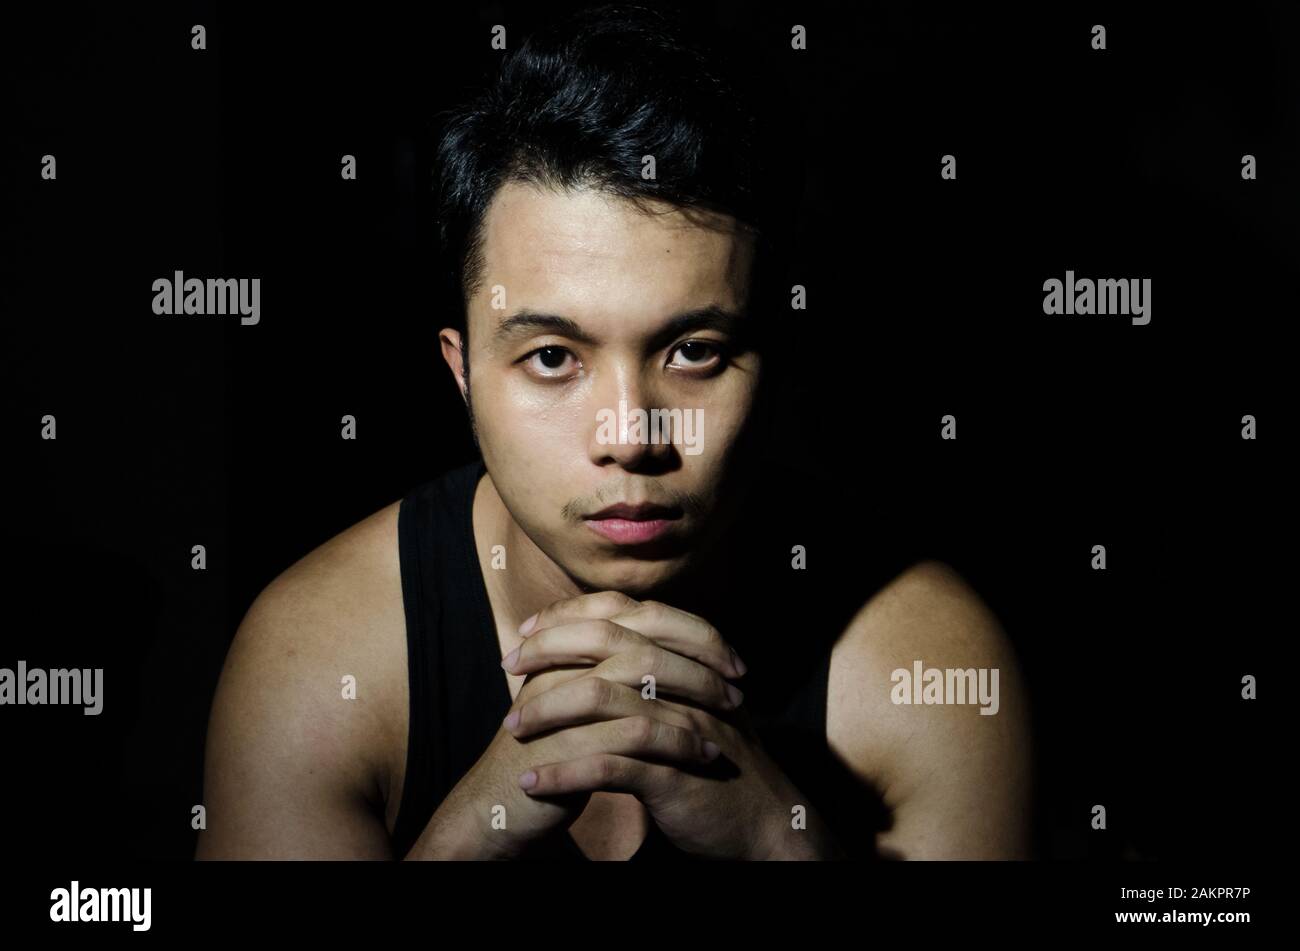 portrait de jeune homme asiatique en lumière sombre Banque D'Images